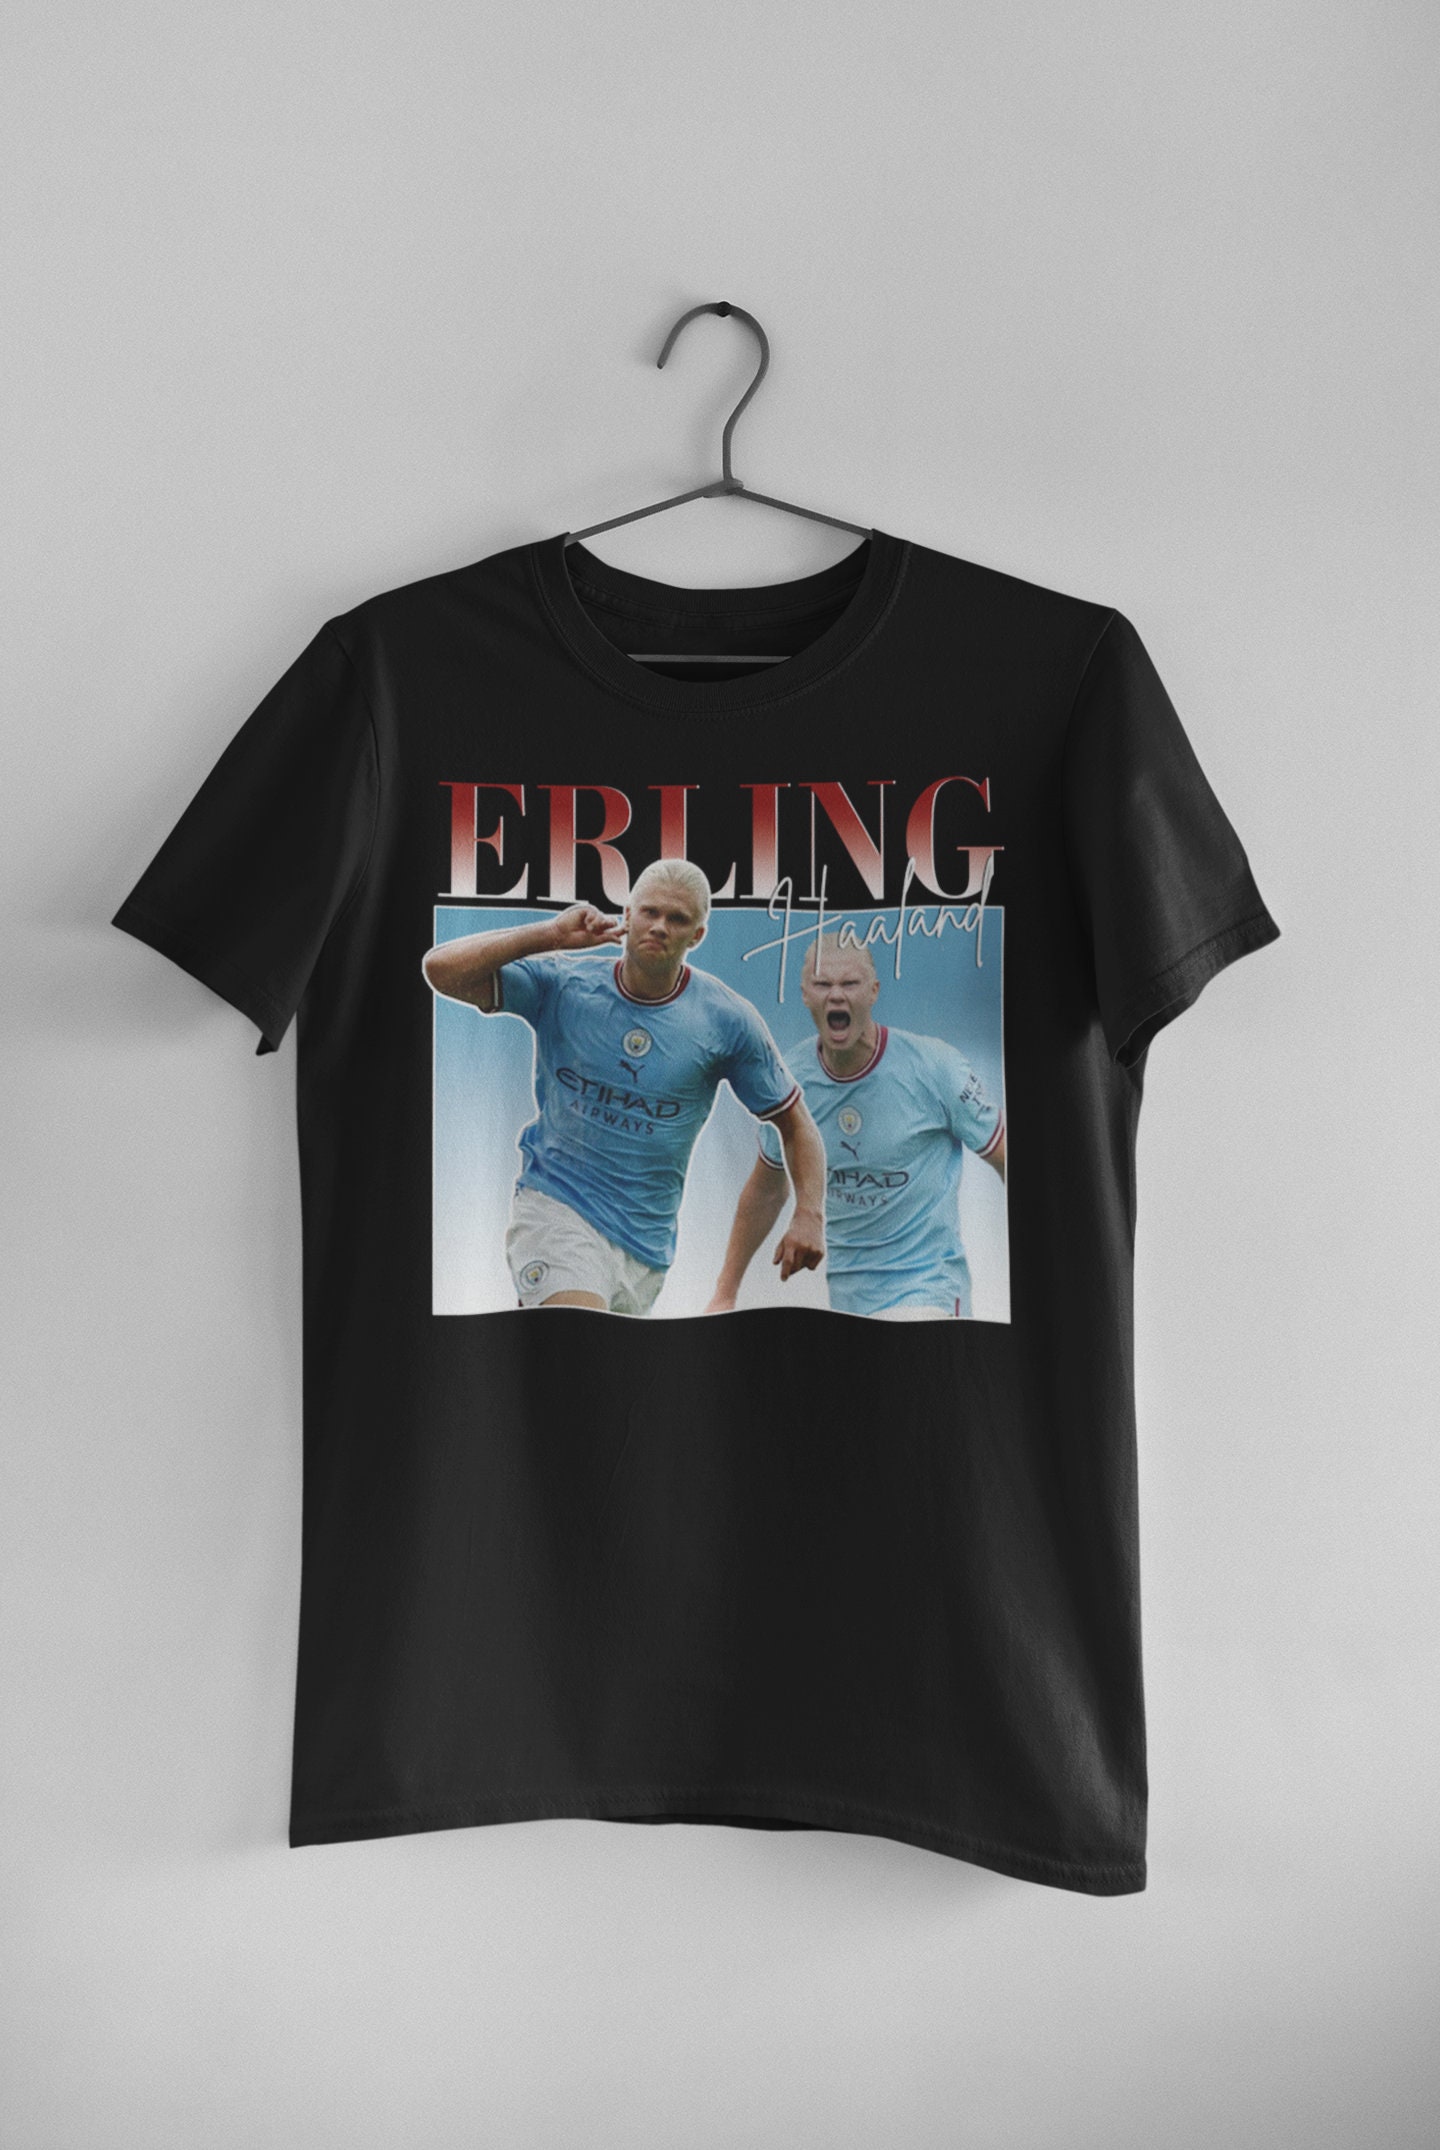 ERLING HAALAND t shirt  - Manchester City